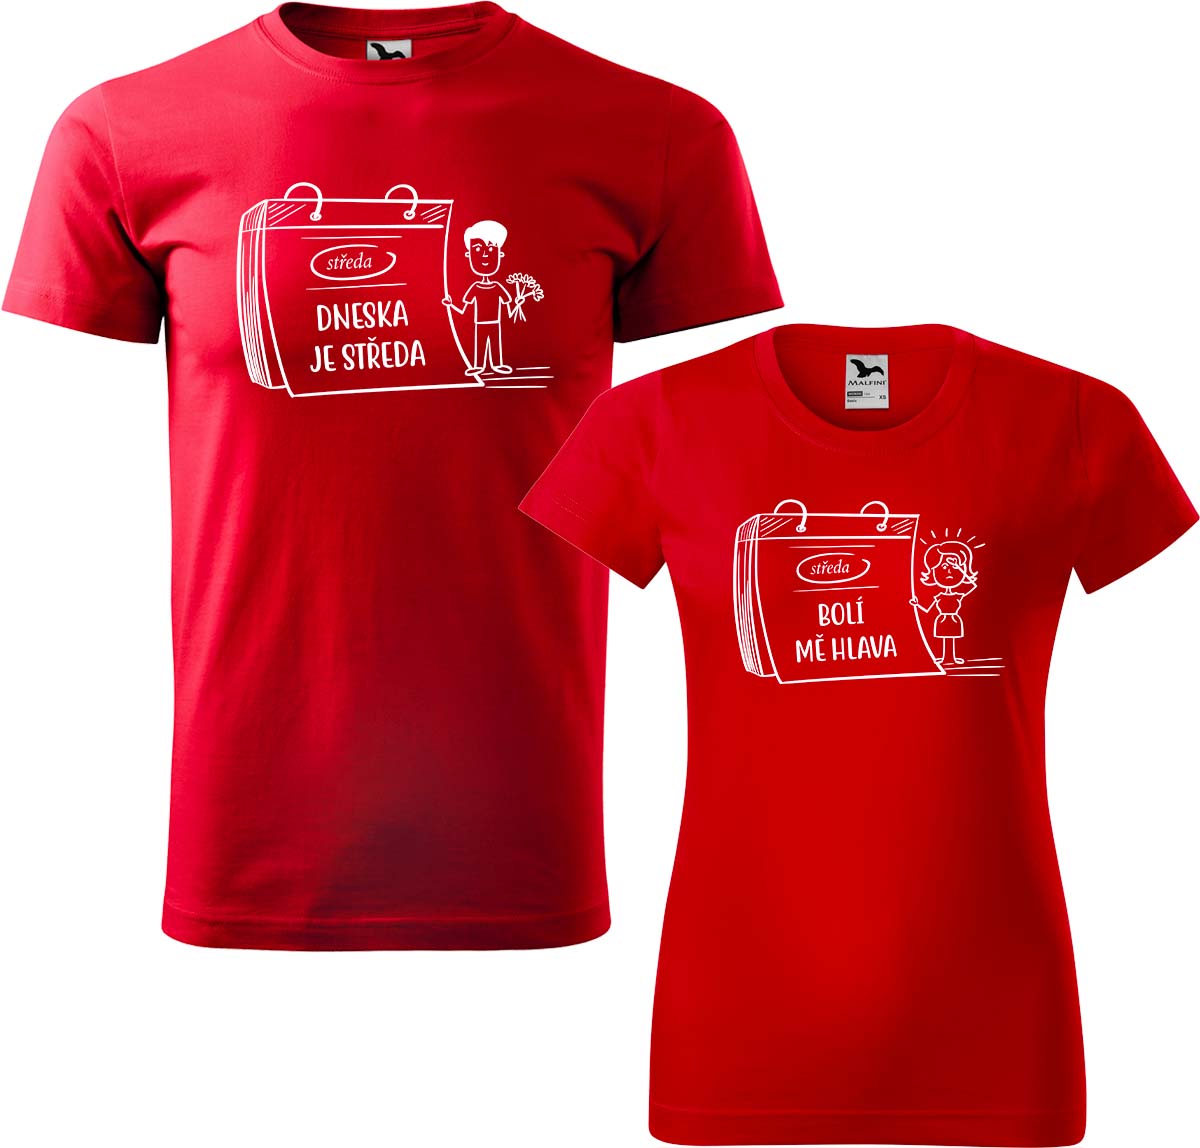 Trička pro páry - Dneska je středa Barva: Červená (07), Velikost dámské tričko: S, Velikost pánské tričko: L